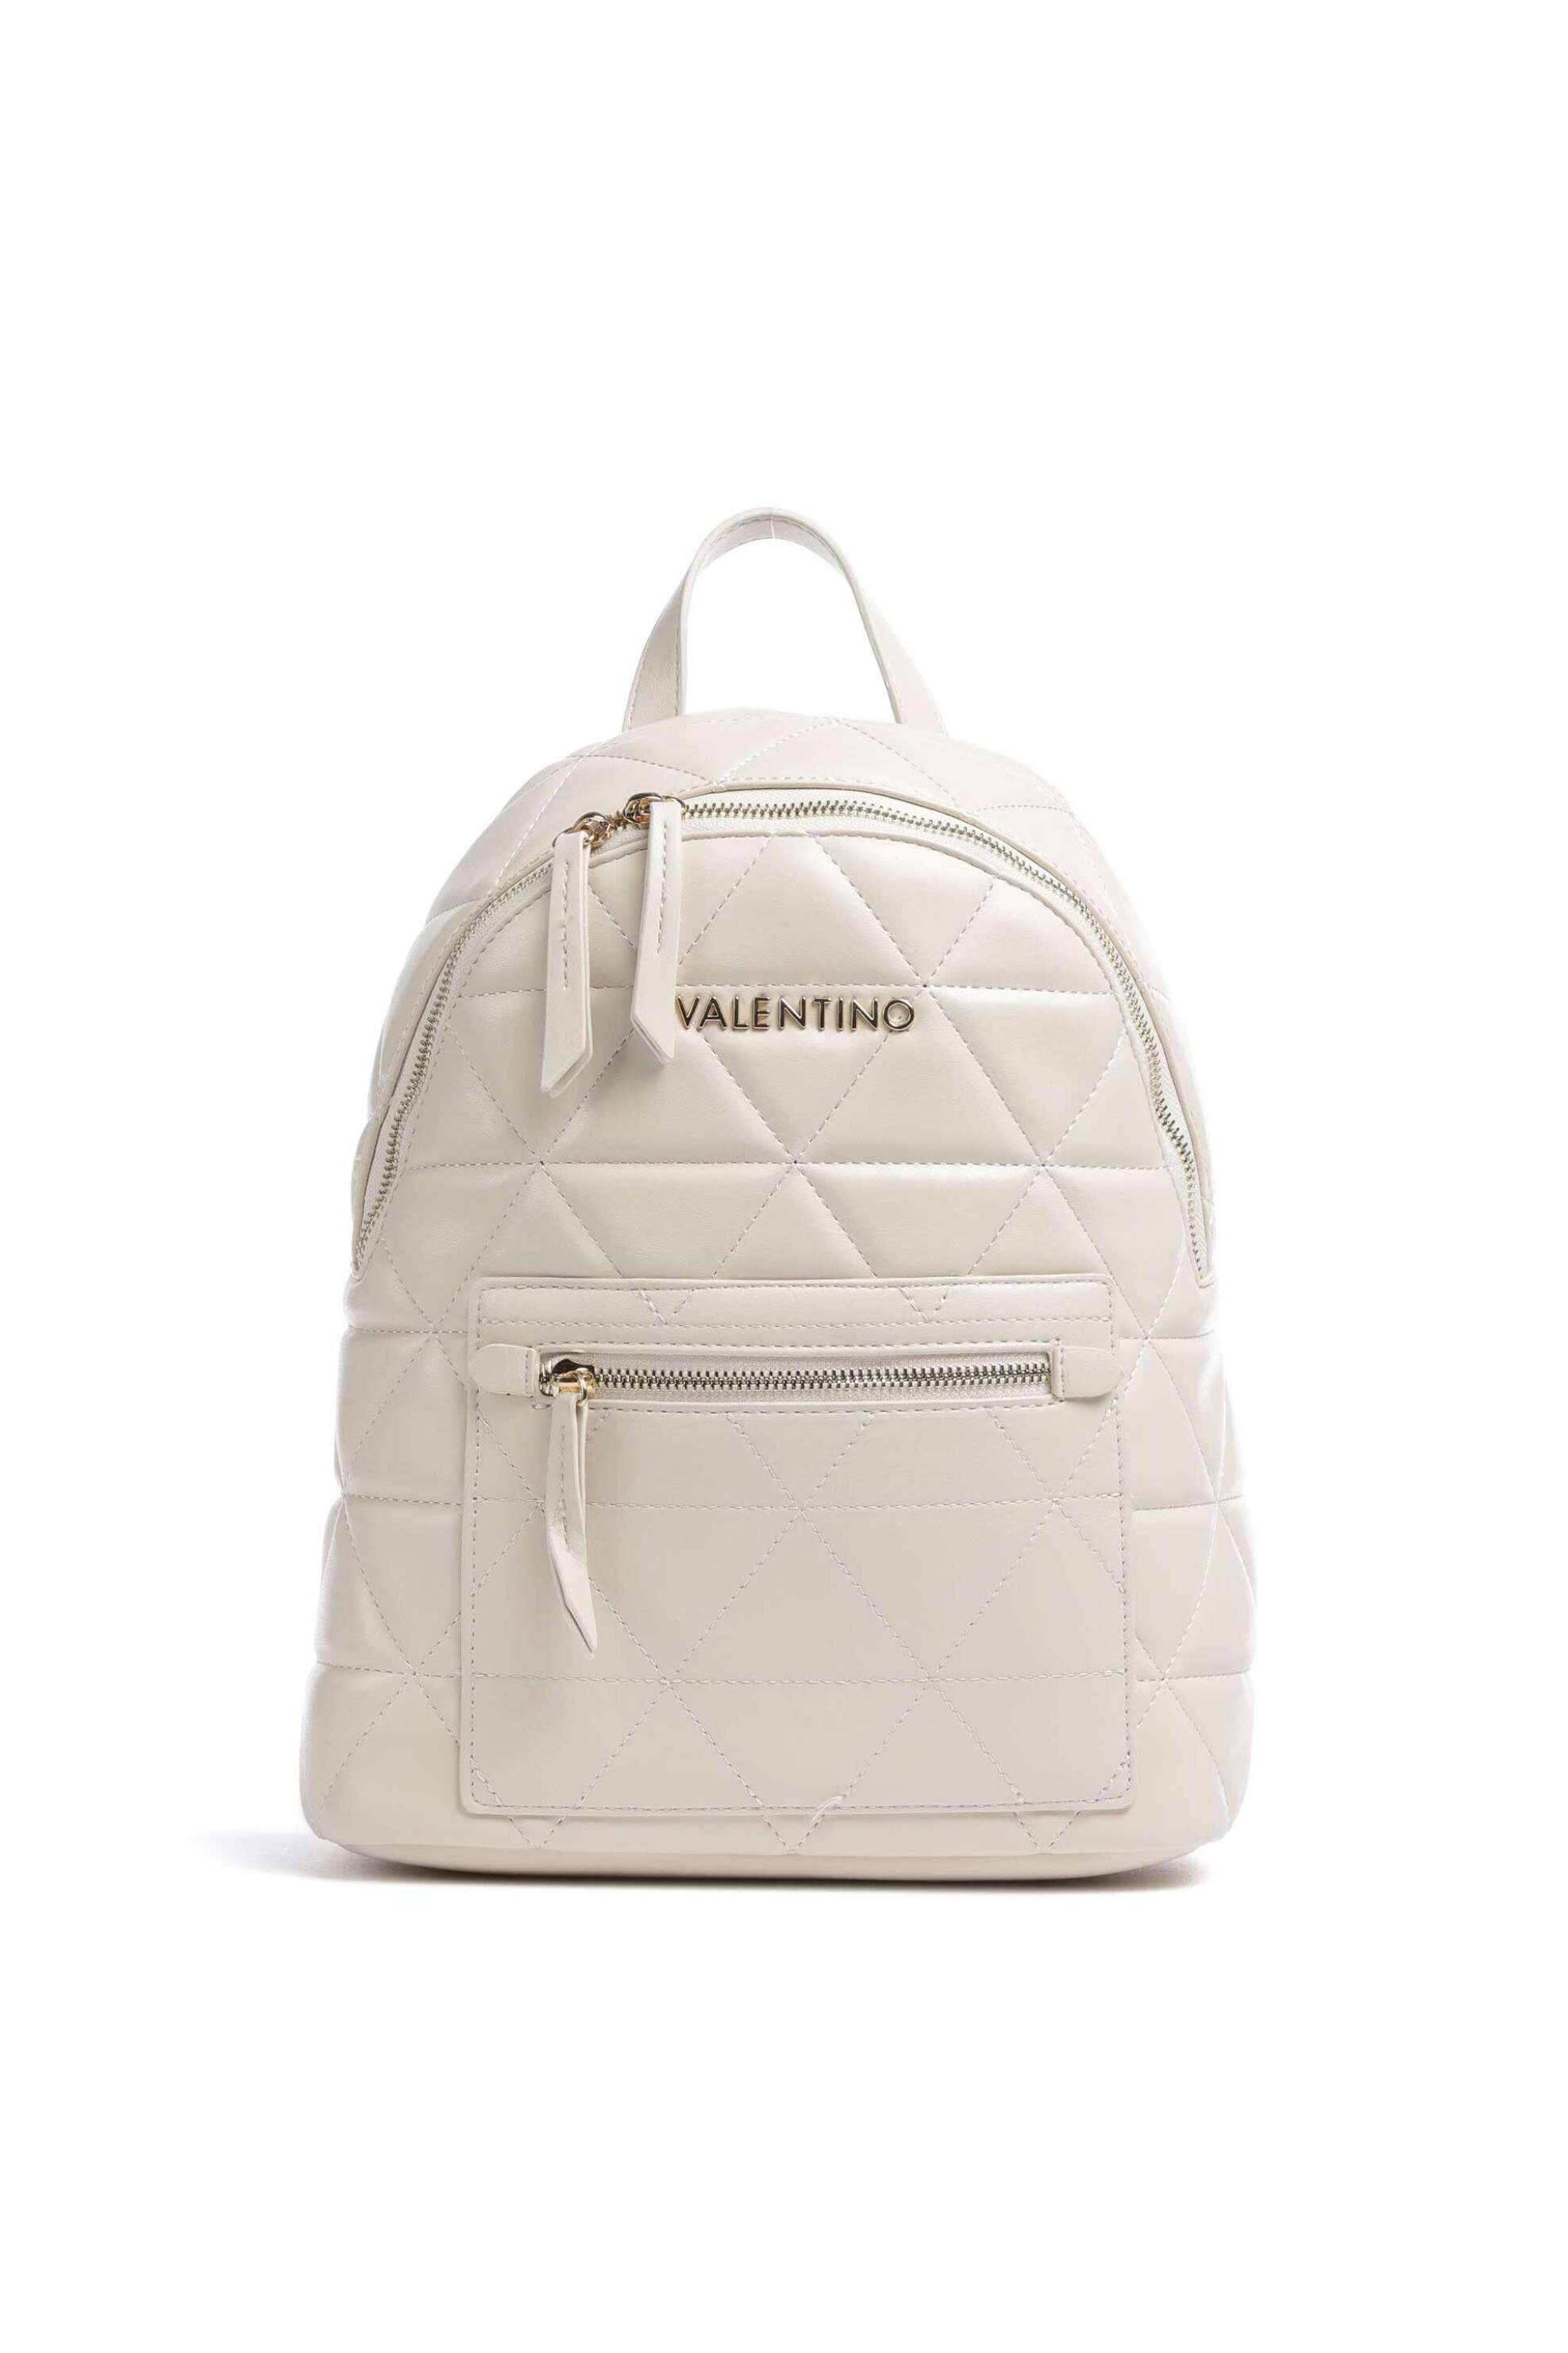 Γυναίκα > ΤΣΑΝΤΕΣ > Σακίδια & Backpacks Valentino γυναικείο backpack μονόχρωμο με ανάγλυφο γεωμετρικό pattern "Carnaby" - 55KVBS7LO03/CAR Εκρού